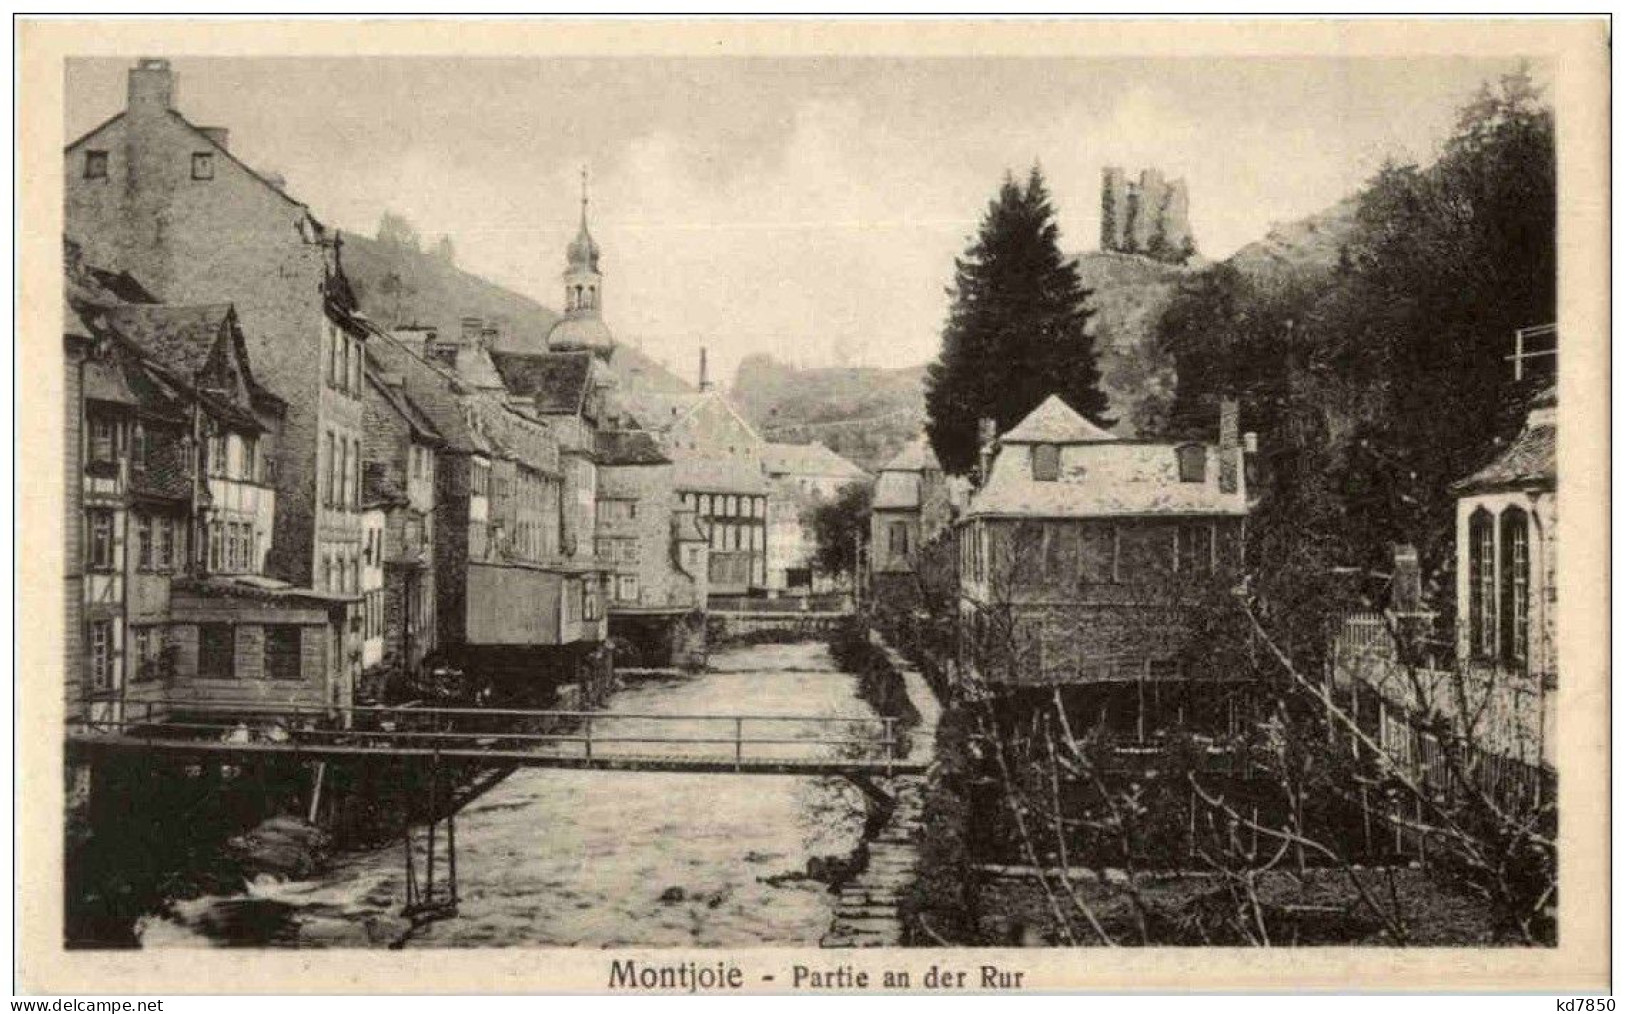 Monschau - Montjoie - Monschau